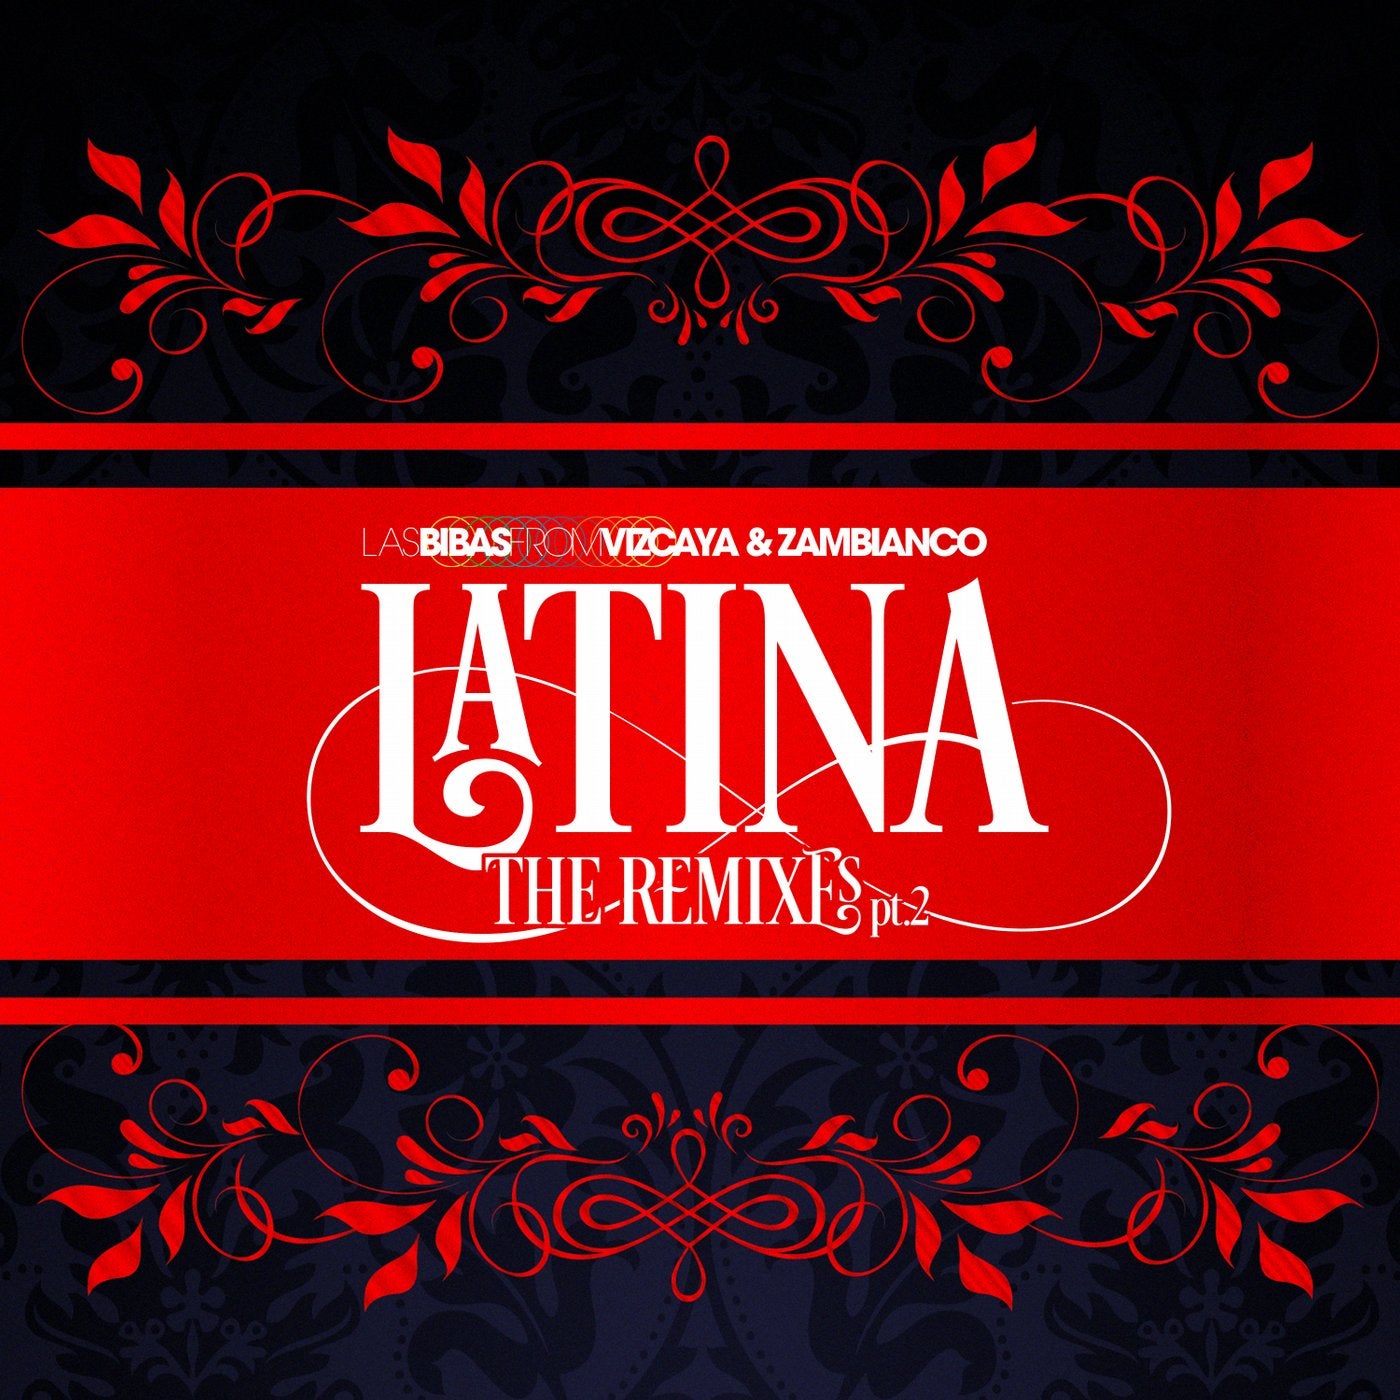 Latina: The Remixes, Pt. 2